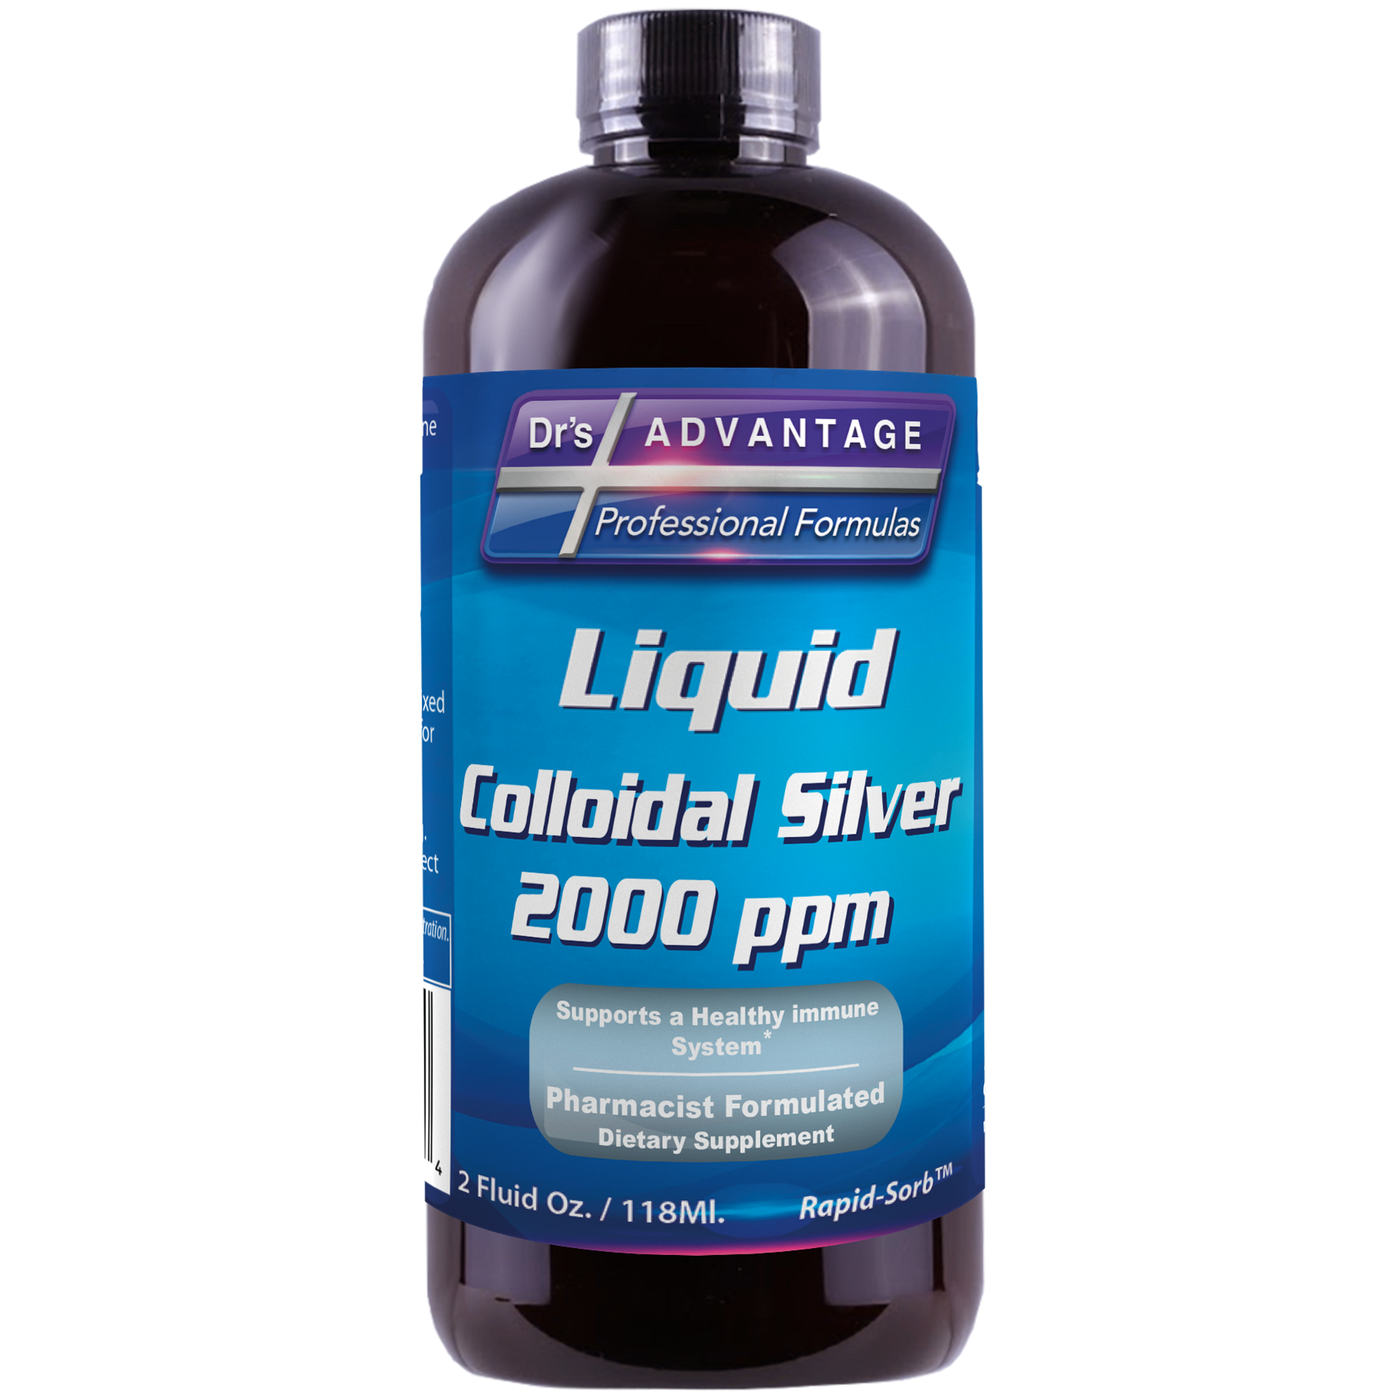 Liquid Colloidal Silver 2000 ppm 2 fl oz Curated Wellness